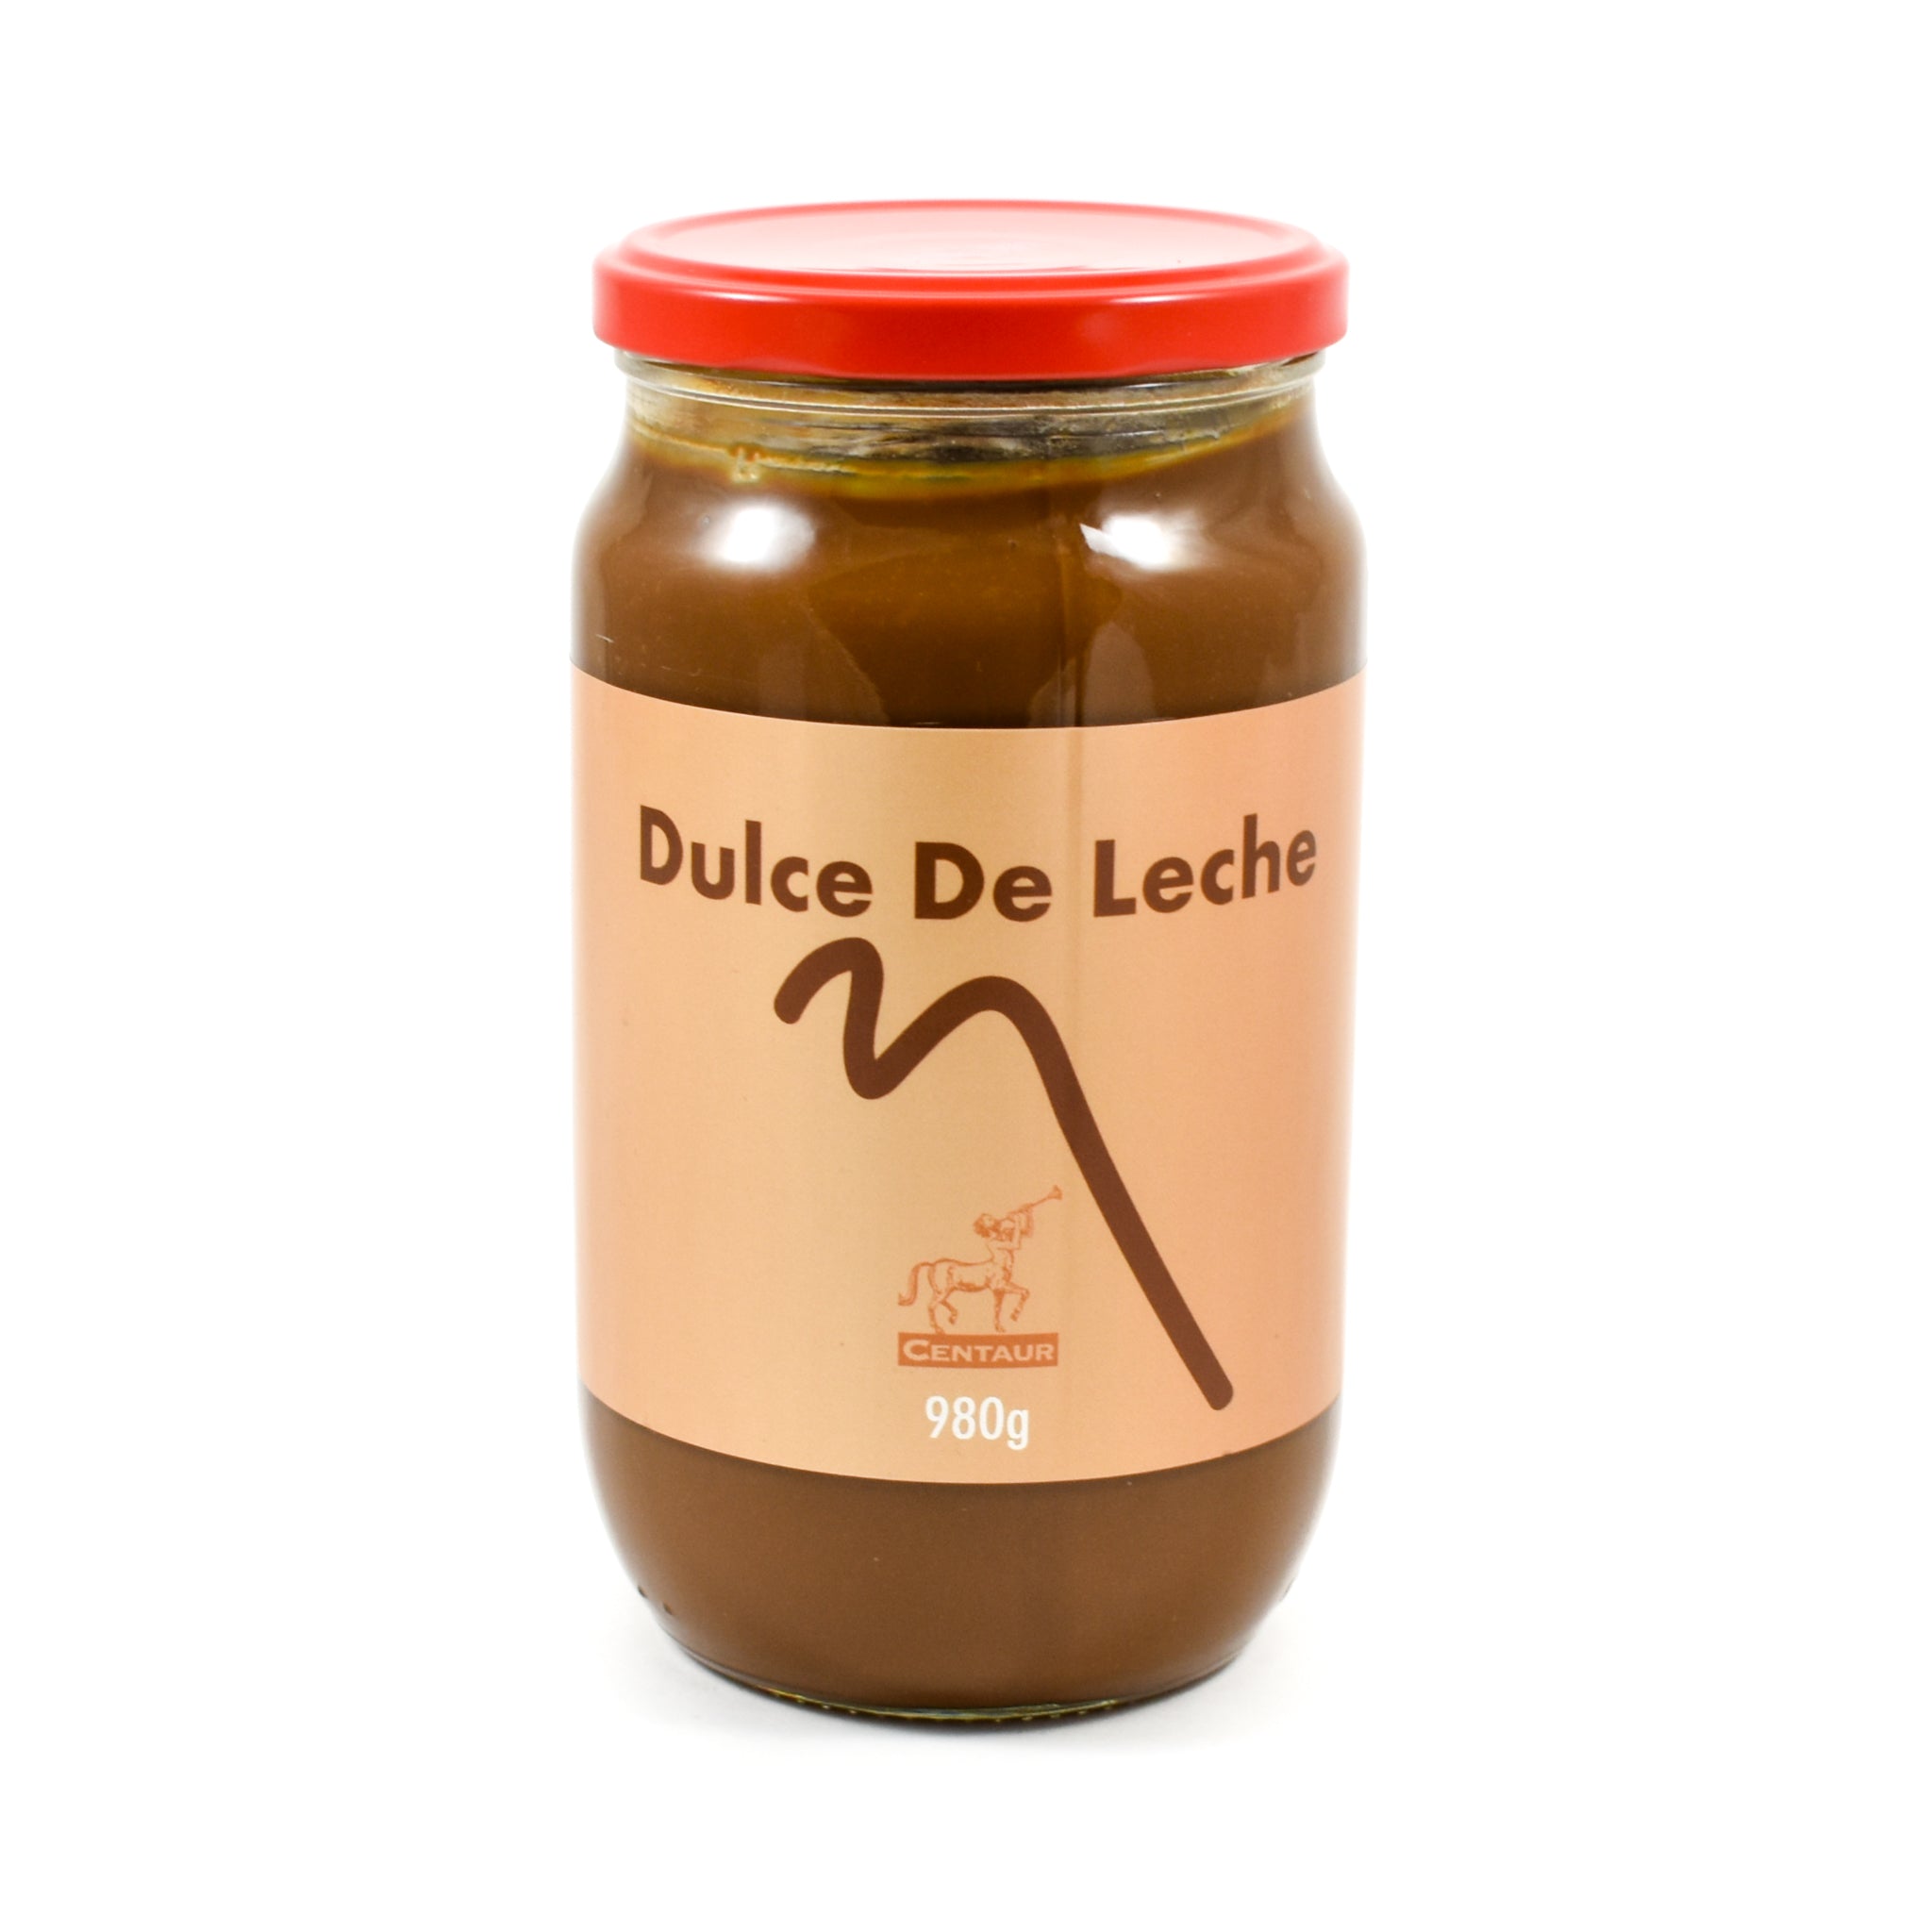 Dulce De Leche | Buy Online | Sous Chef UK